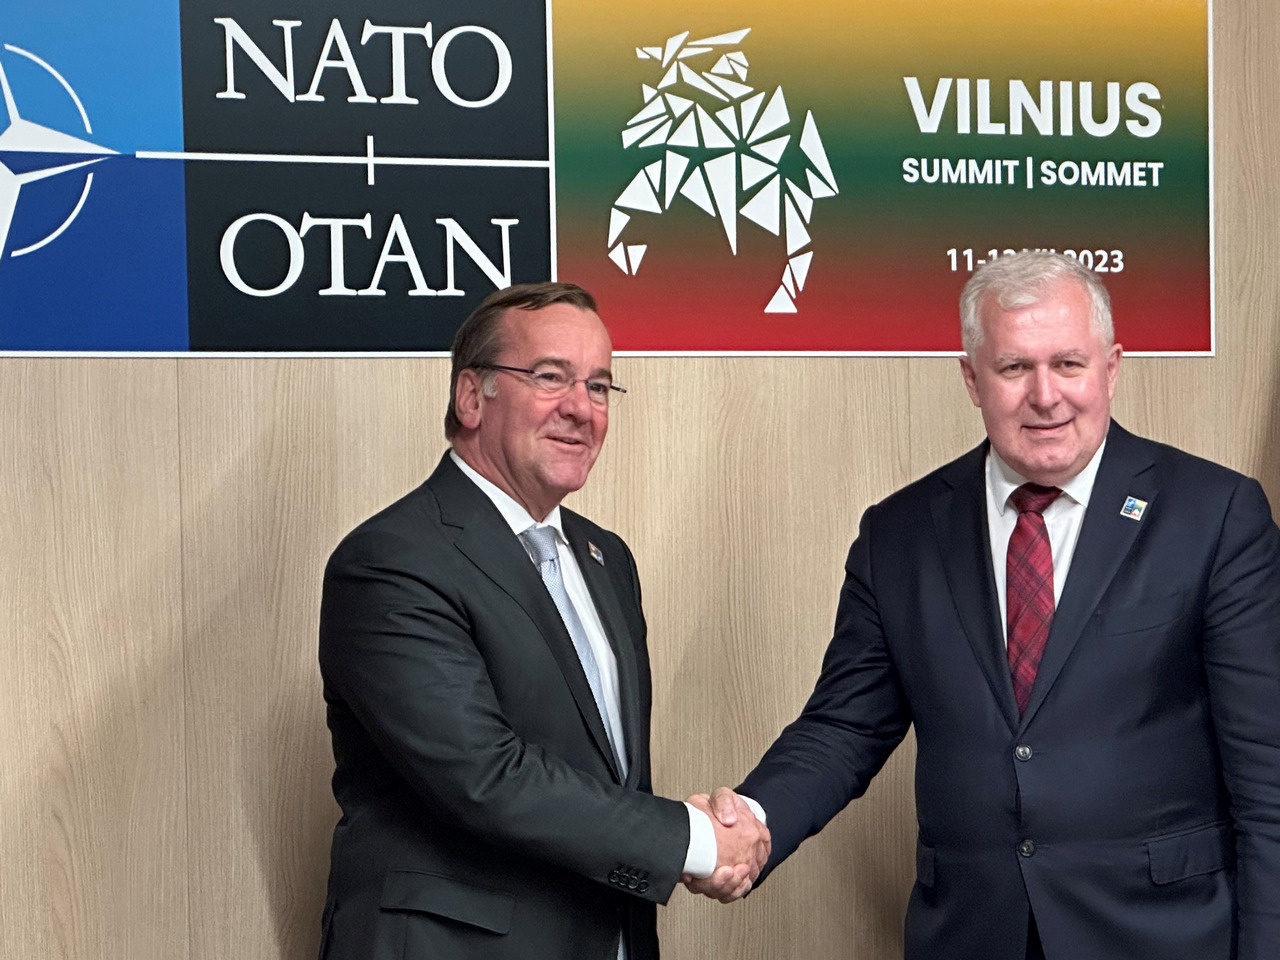 Во время визита в Вильнюс Писториус объявил, что Германия готова разместить в Литве бригаду бундесвера численностью около 4000 человек, июль 2023 г.